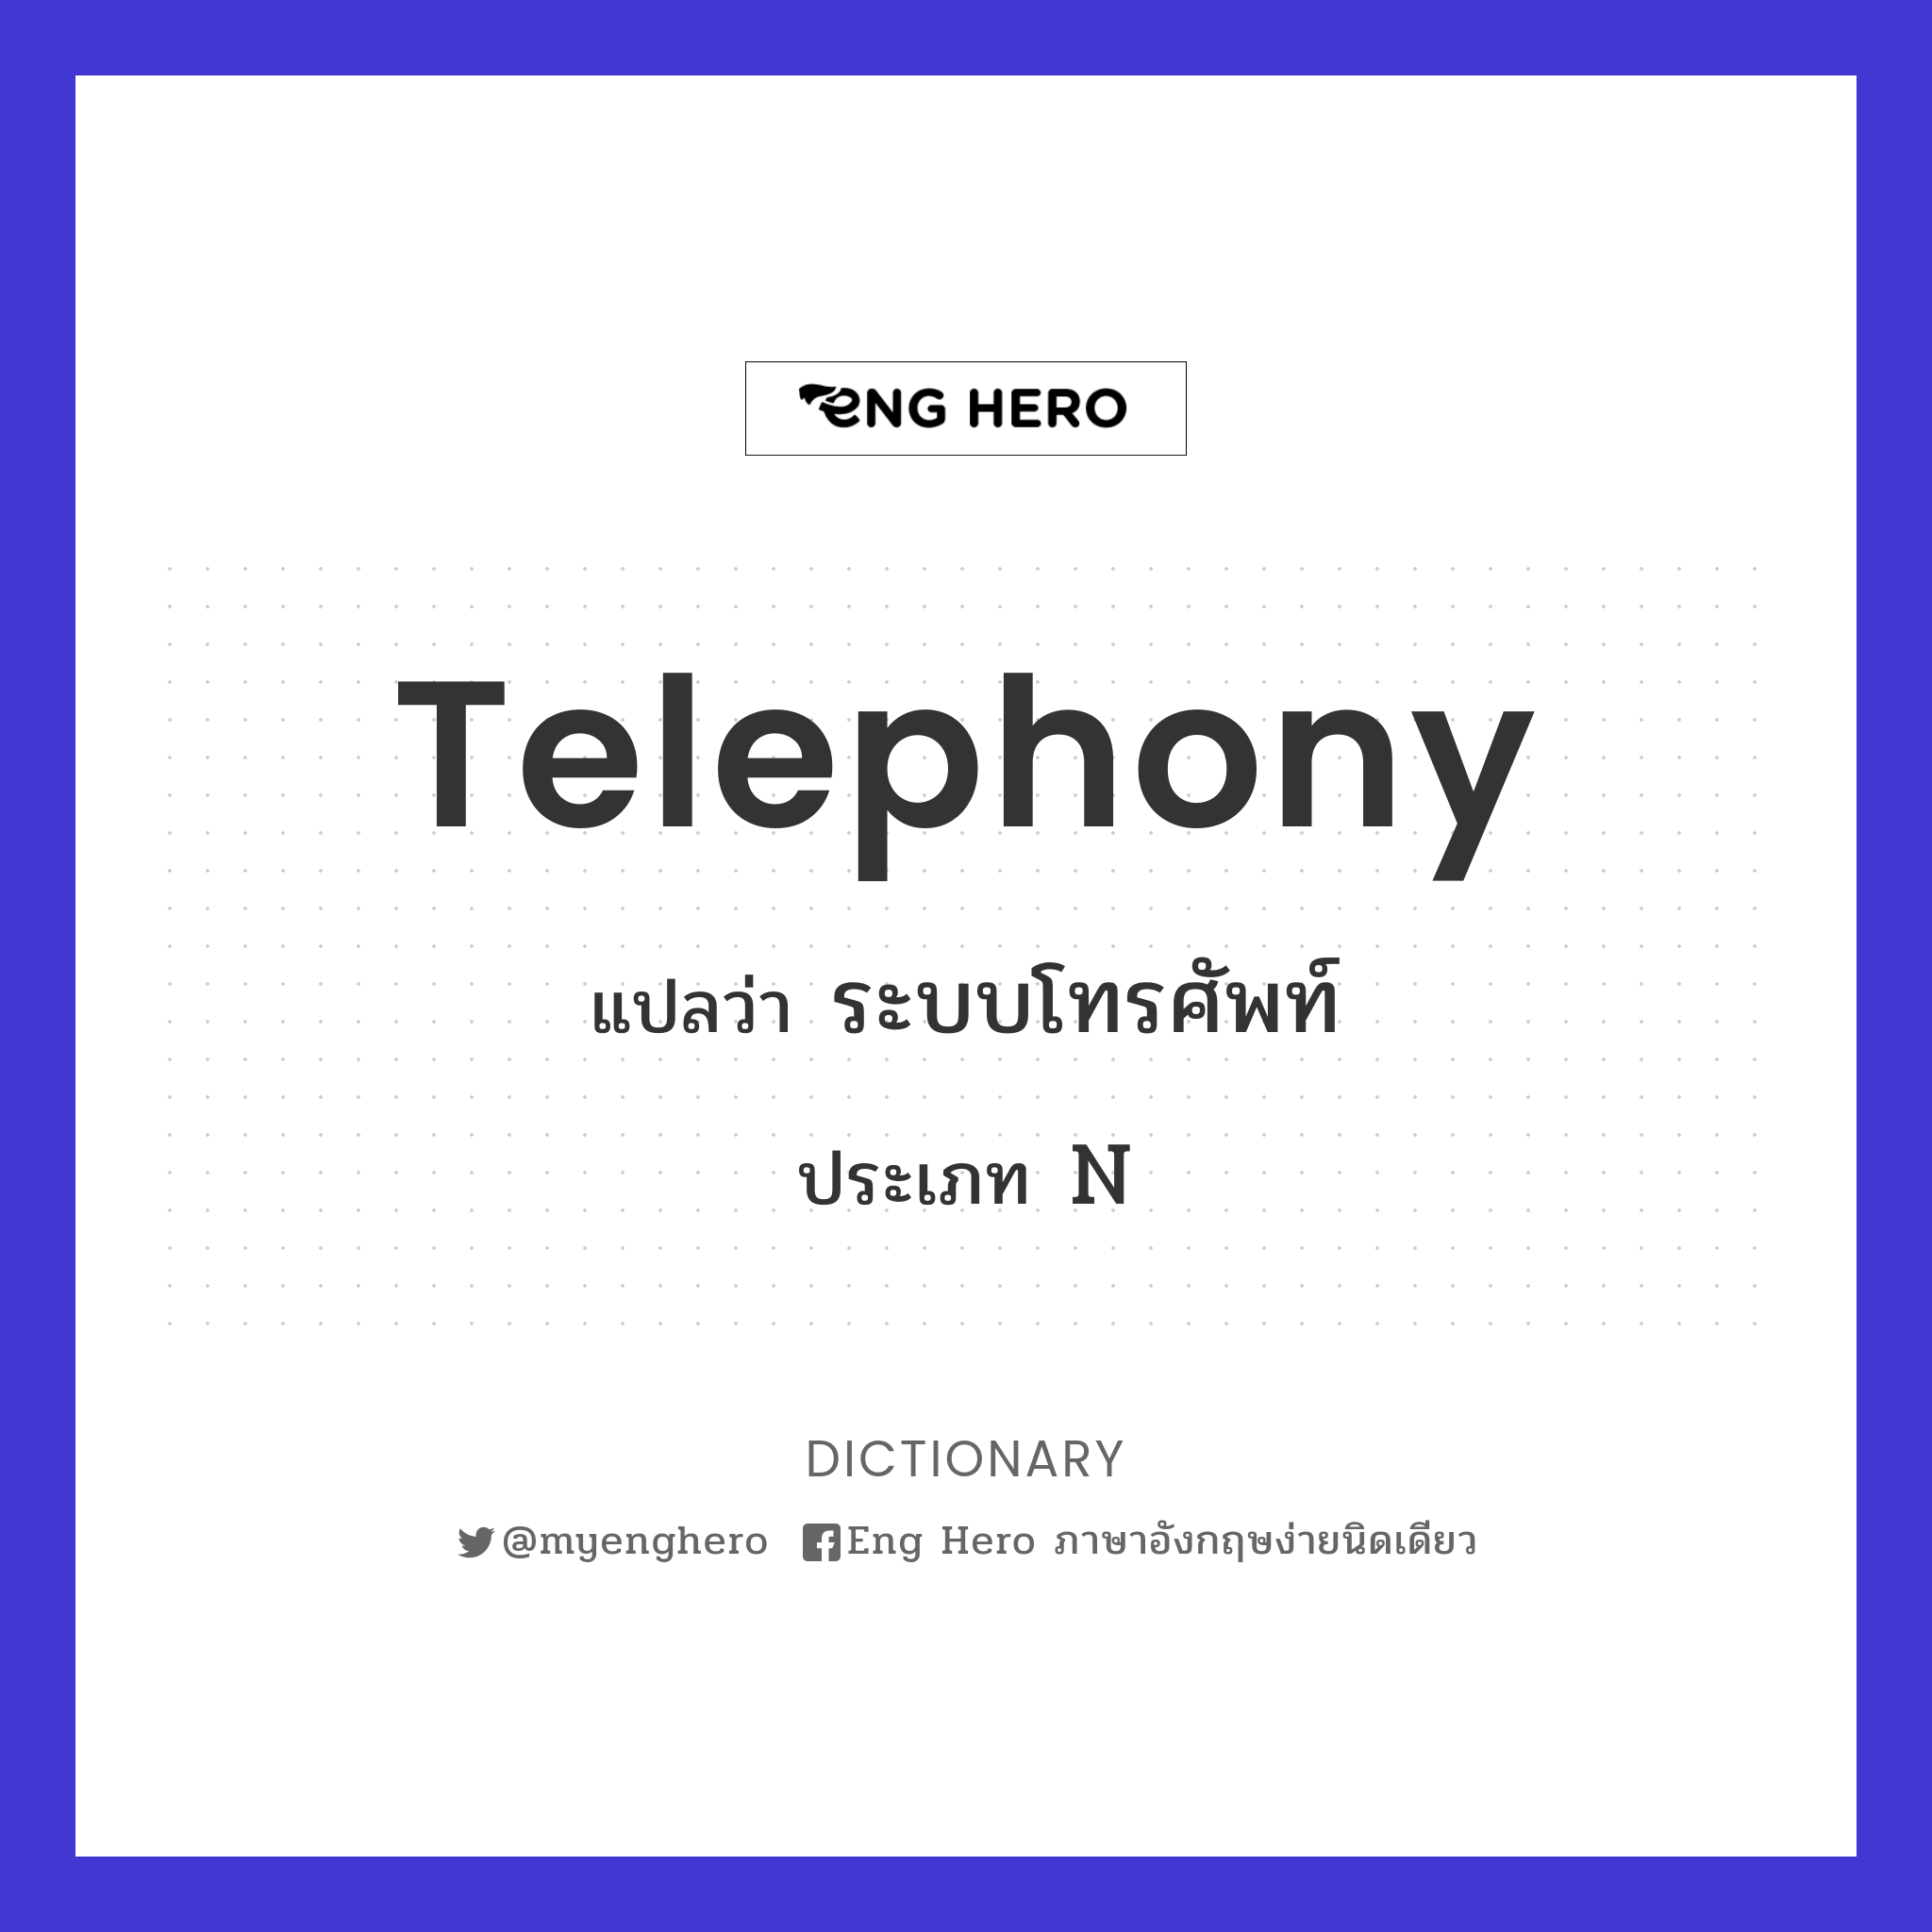 telephony